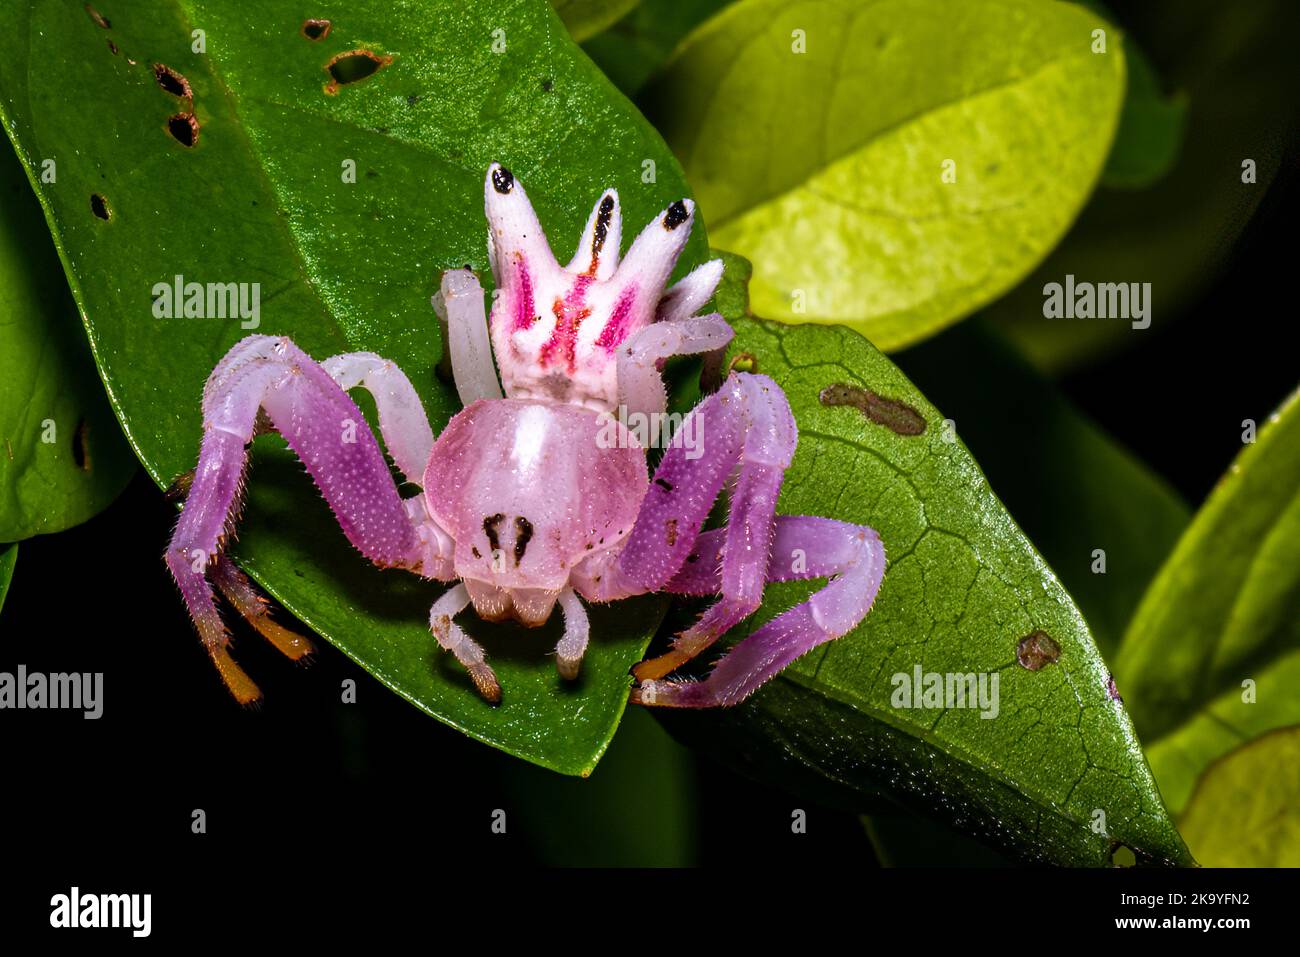 Petite Epicadus-heterogaster / araignée de crabe rose sur une macro-photographie de feuille verte Banque D'Images